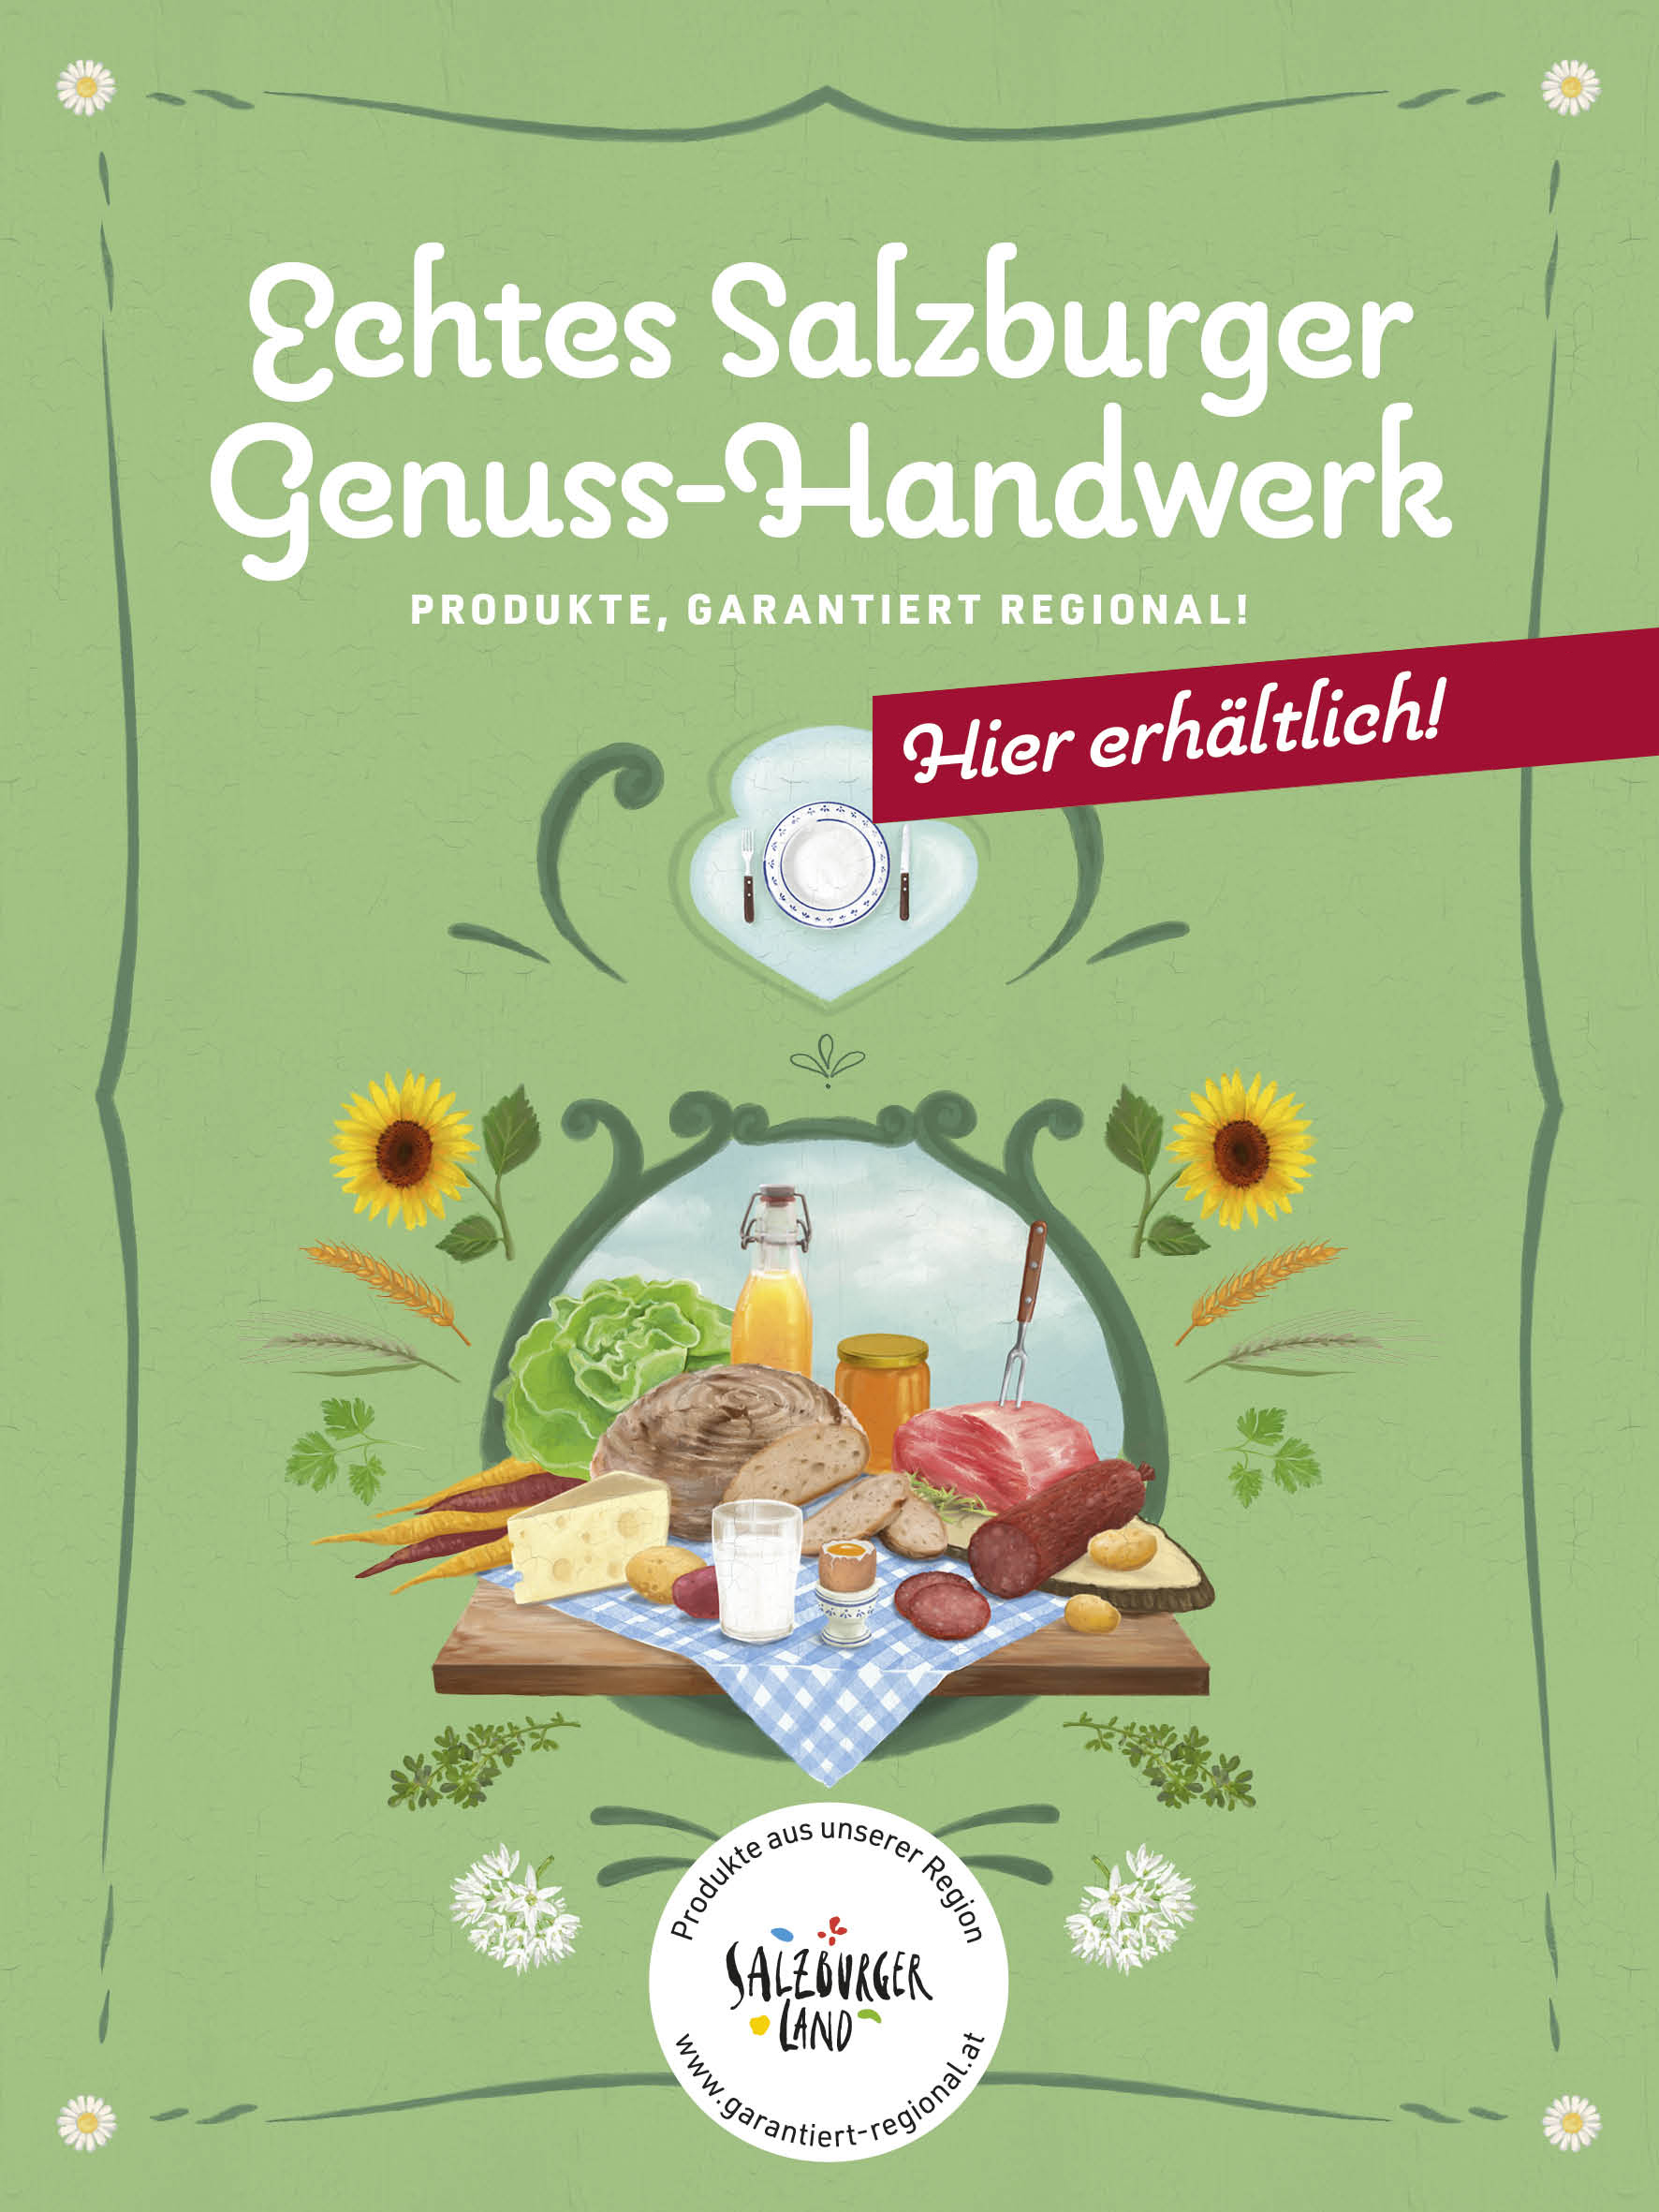 Bauernmarkt Fuchserei Buchbichlgut bei Salzburg schmeckt